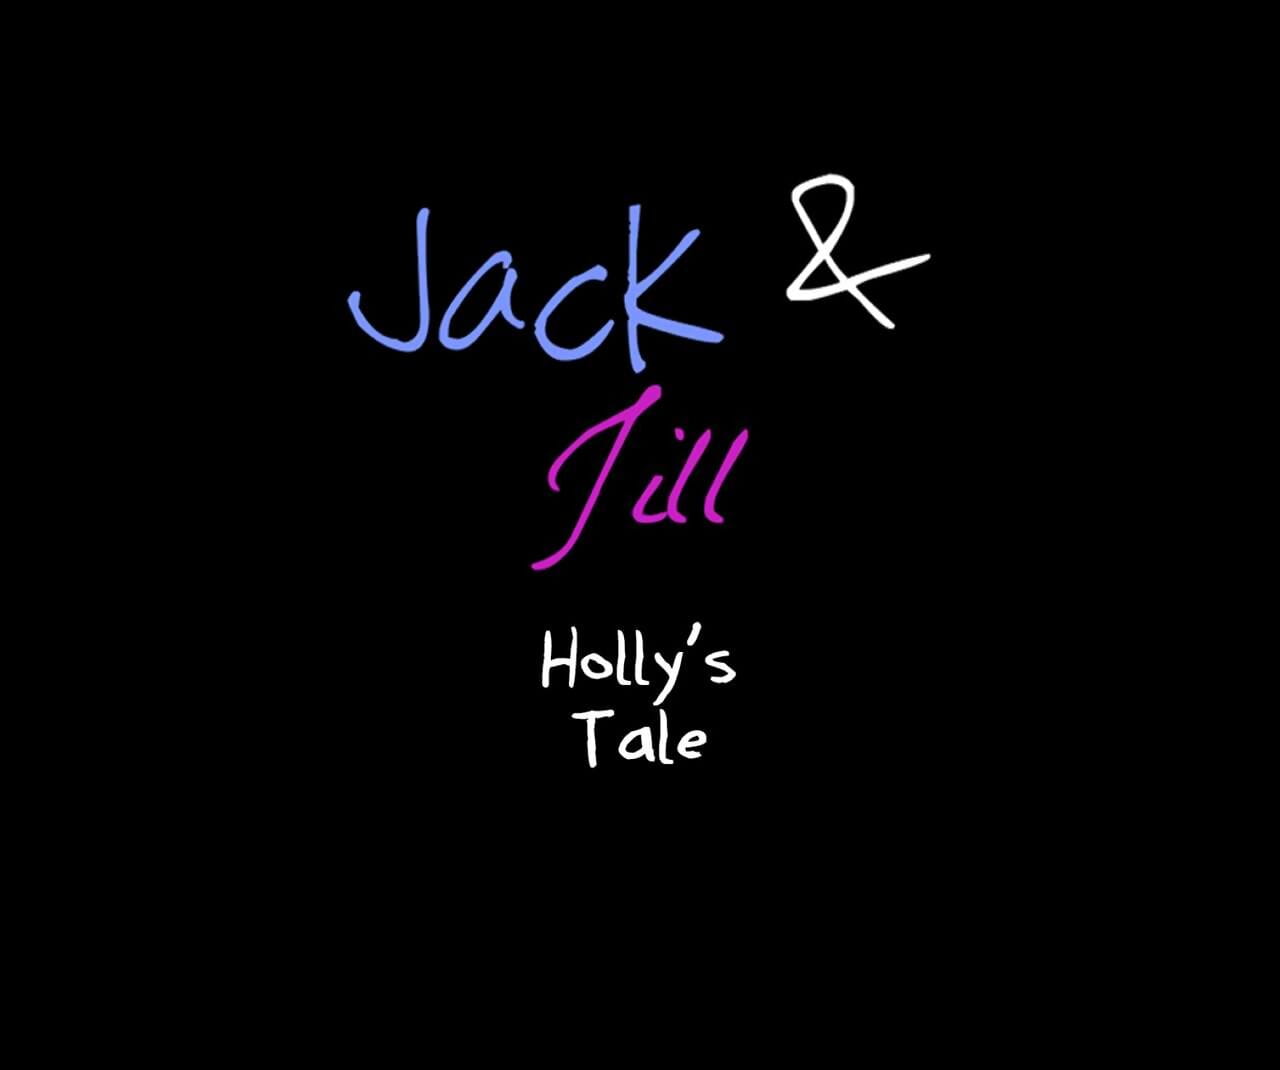 Jack en jill hollys verhaal in 3d comix geslacht afbeelding